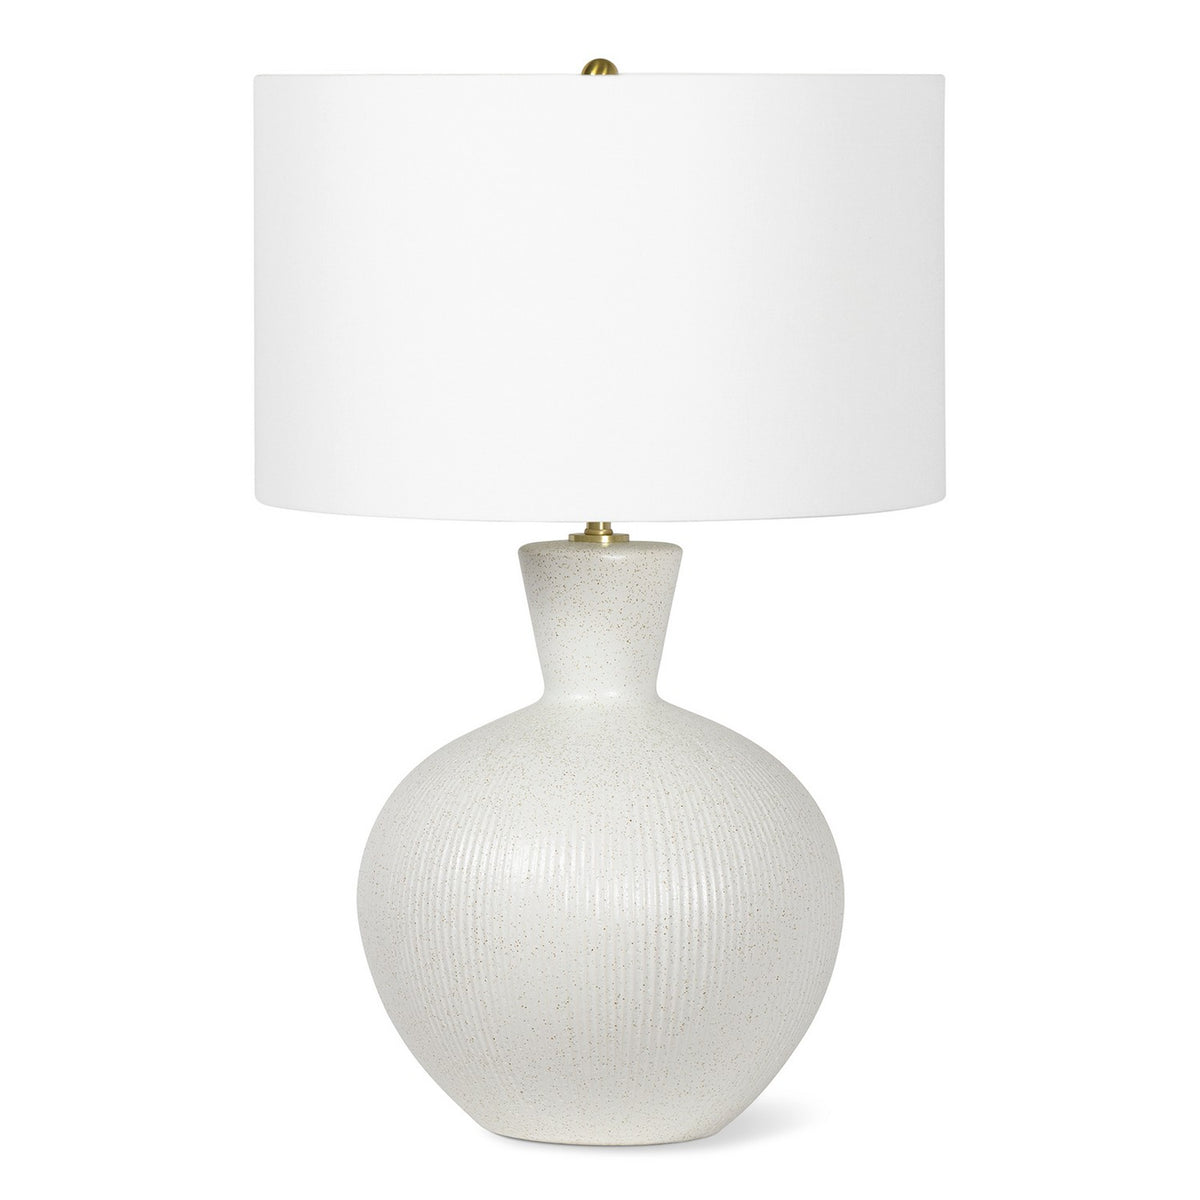 Regina Andrew - 13-1577 - One Light Table Lamp - Reyka - White